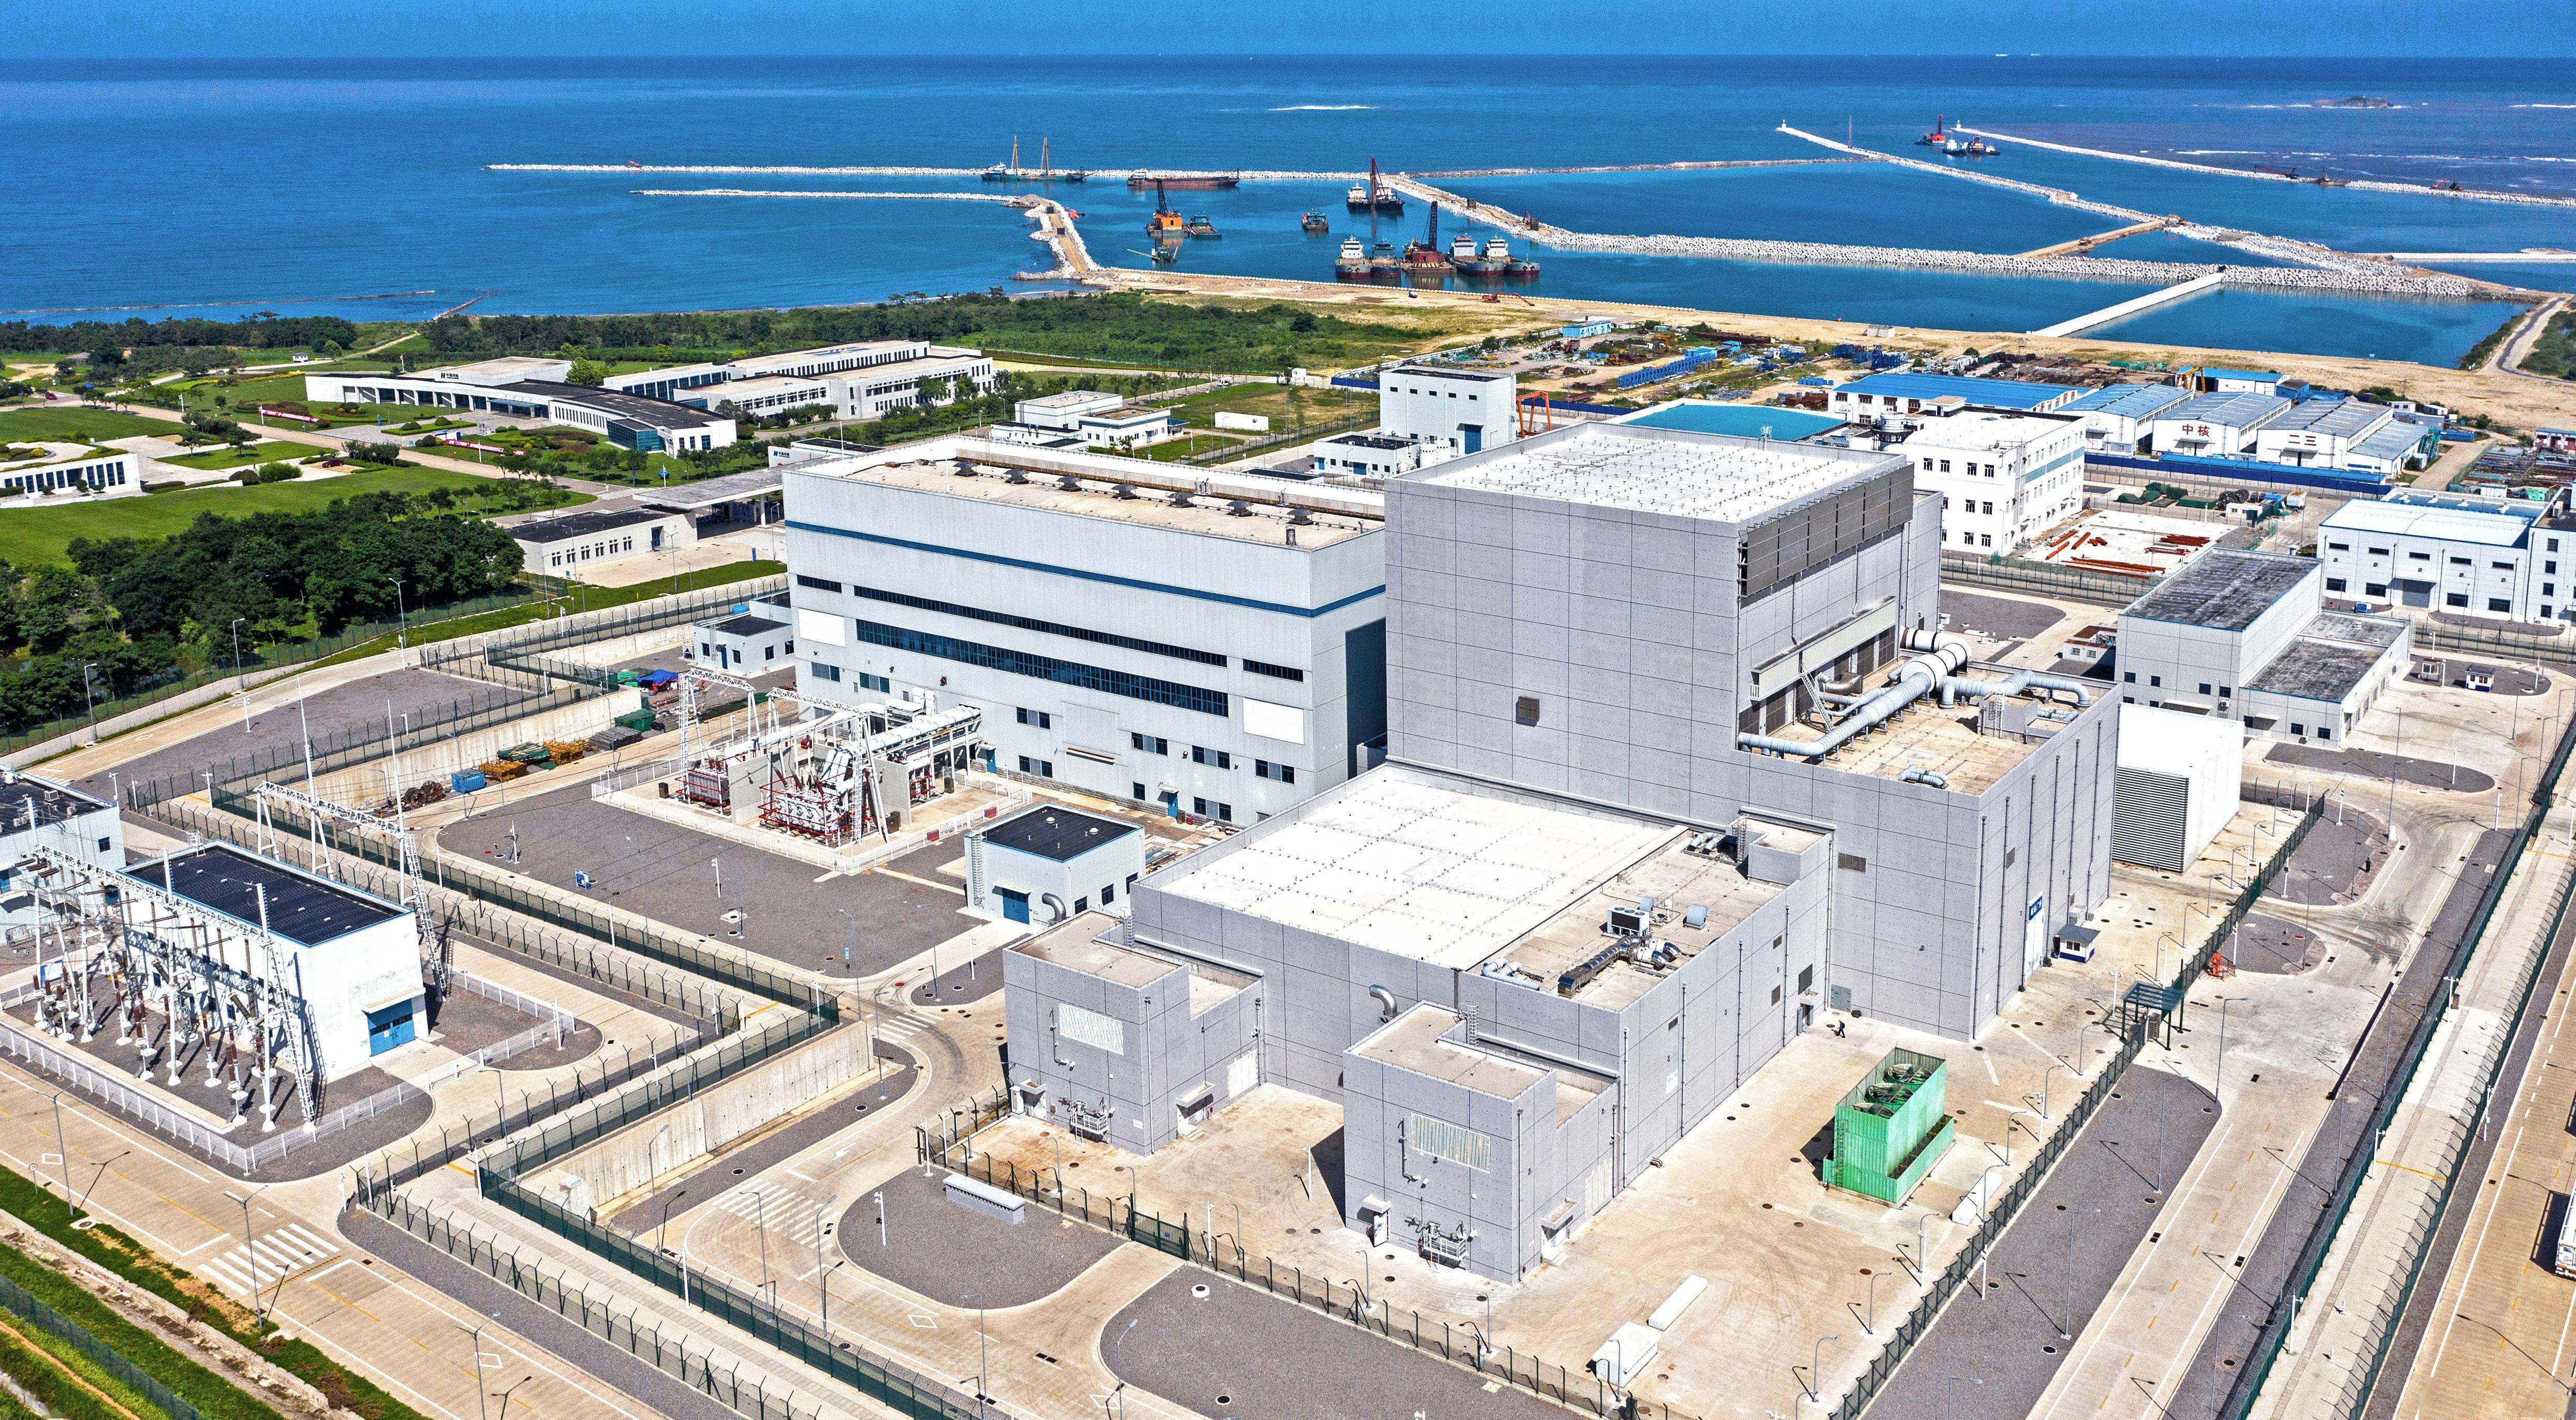 高温气冷堆是国际公认的第四代核电技术先进堆型,是世界核电未来发展